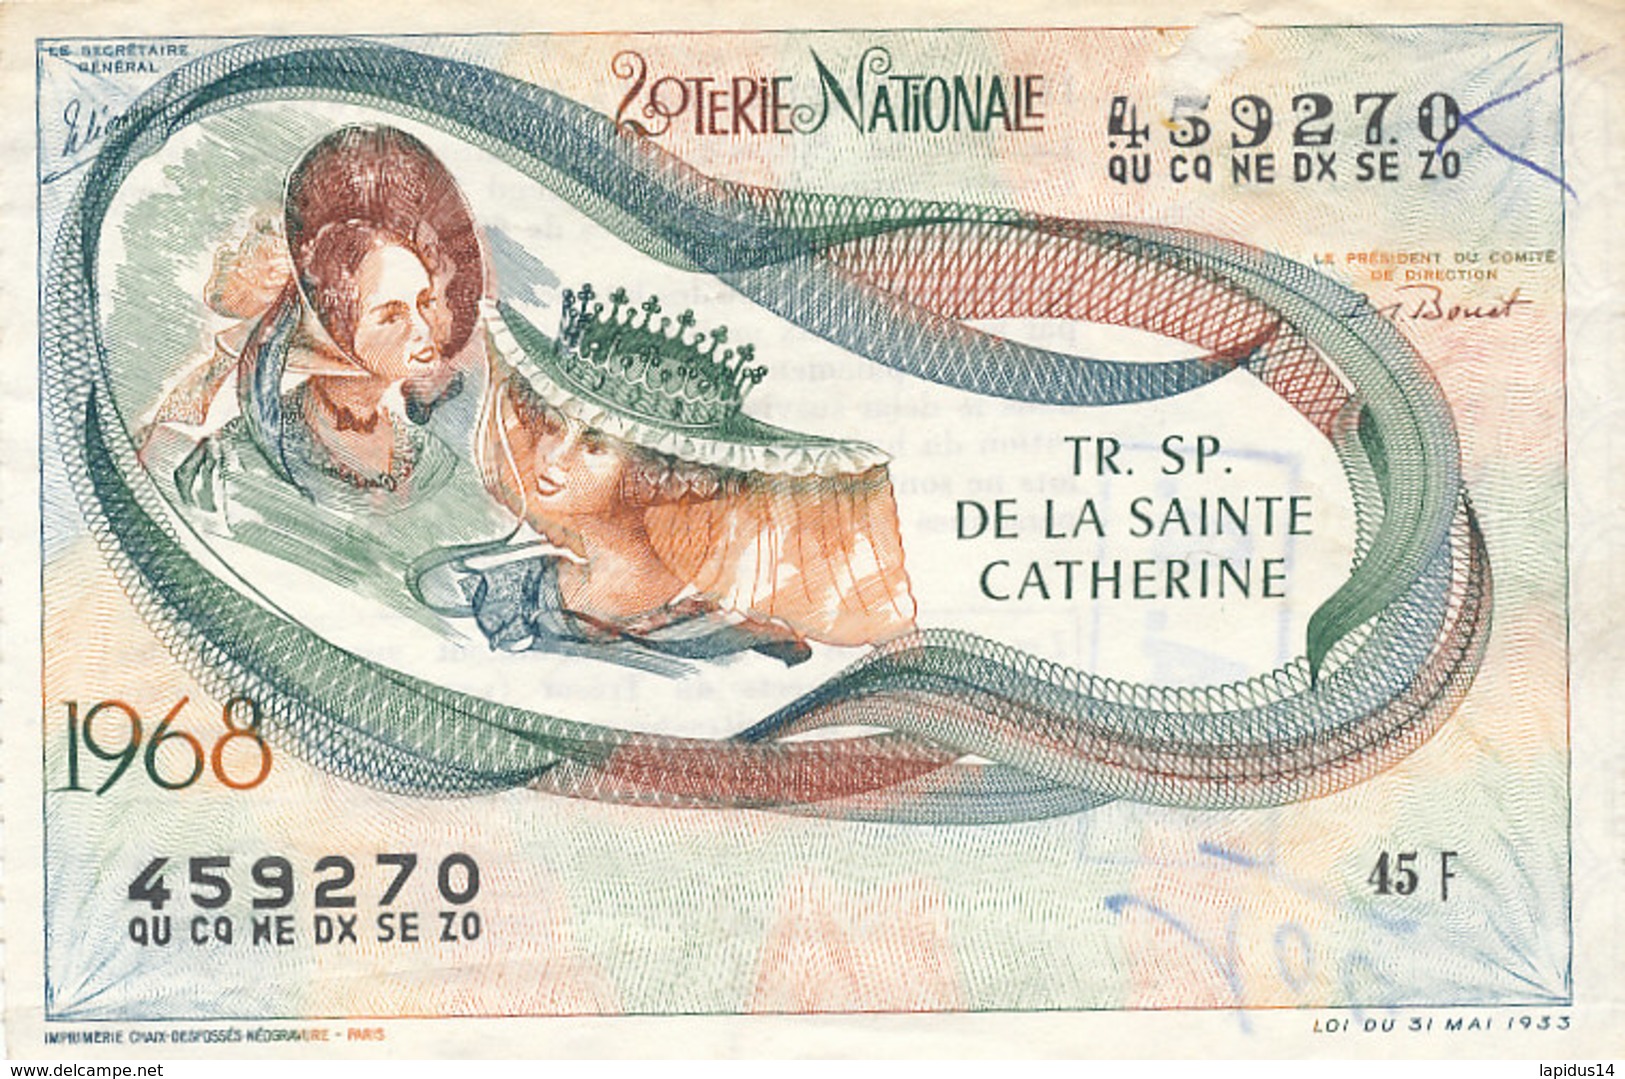 BL 23 / BILLET  LOTERIE NATIONALE      TRANCHE  DE LA SAINTE CATHERINE  1968 - Billets De Loterie